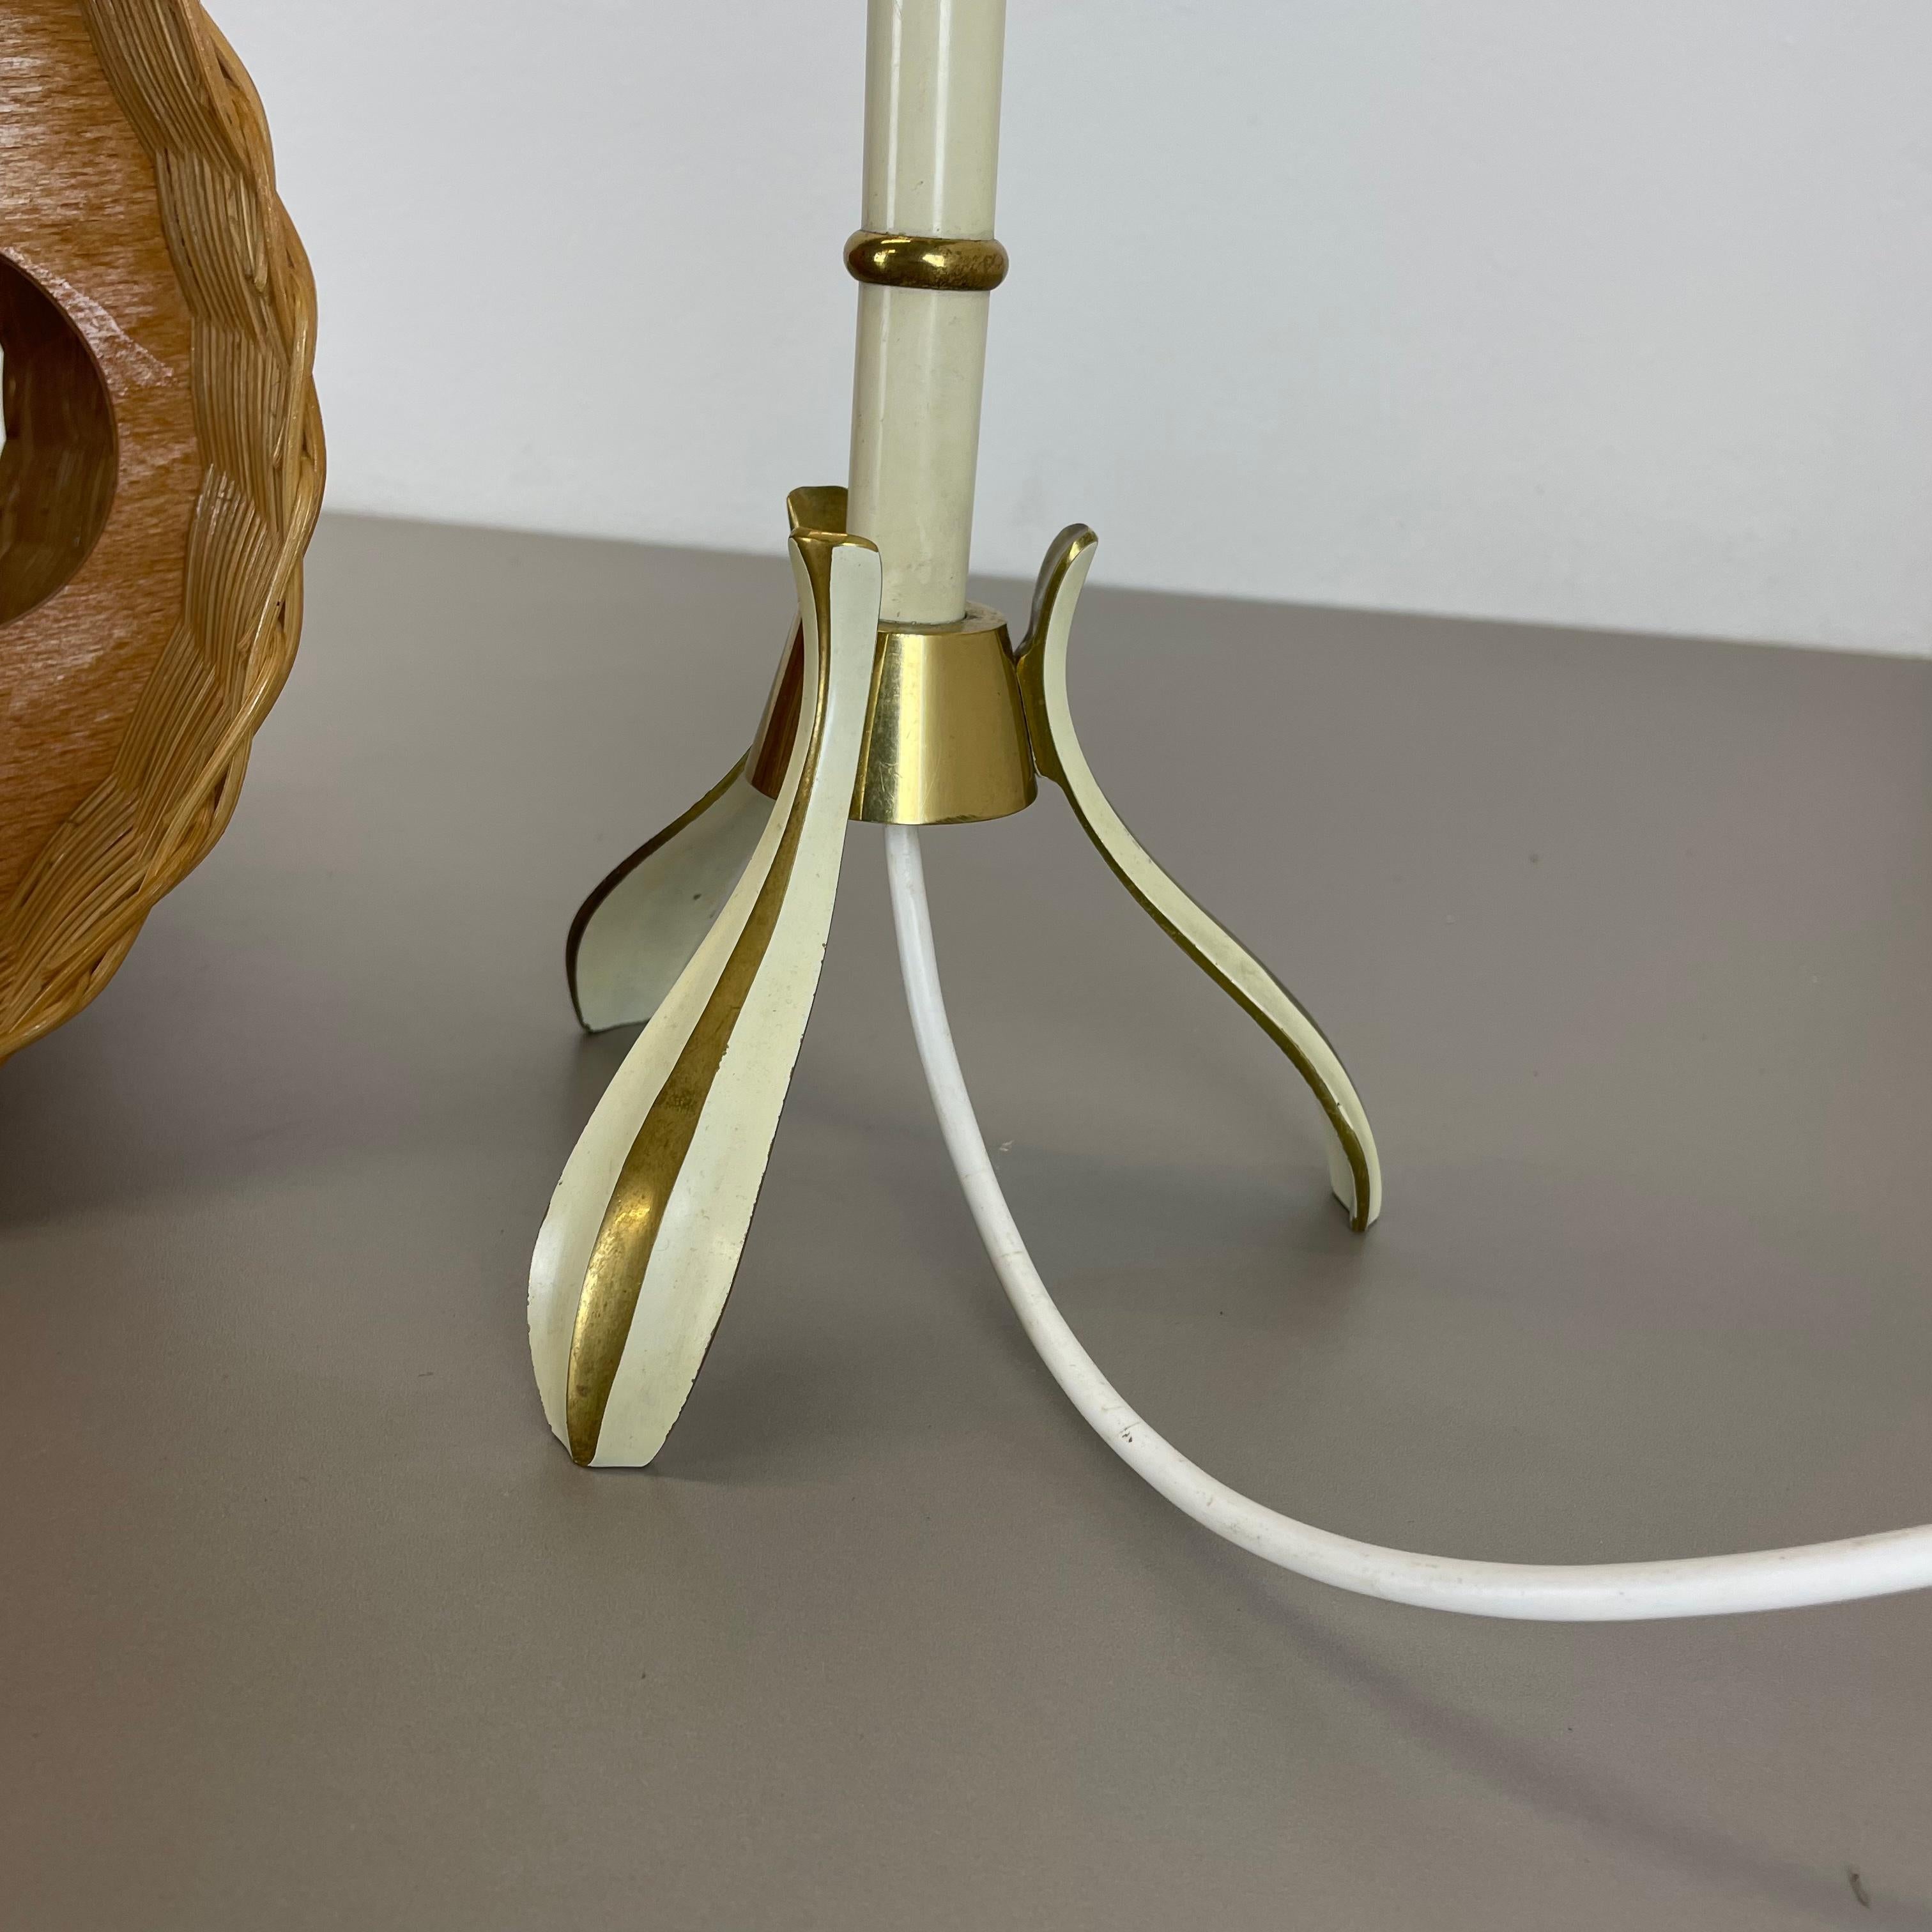 Original Rattan and Brass Table Light by Vereinigte Werkstätten München, Germany For Sale 12